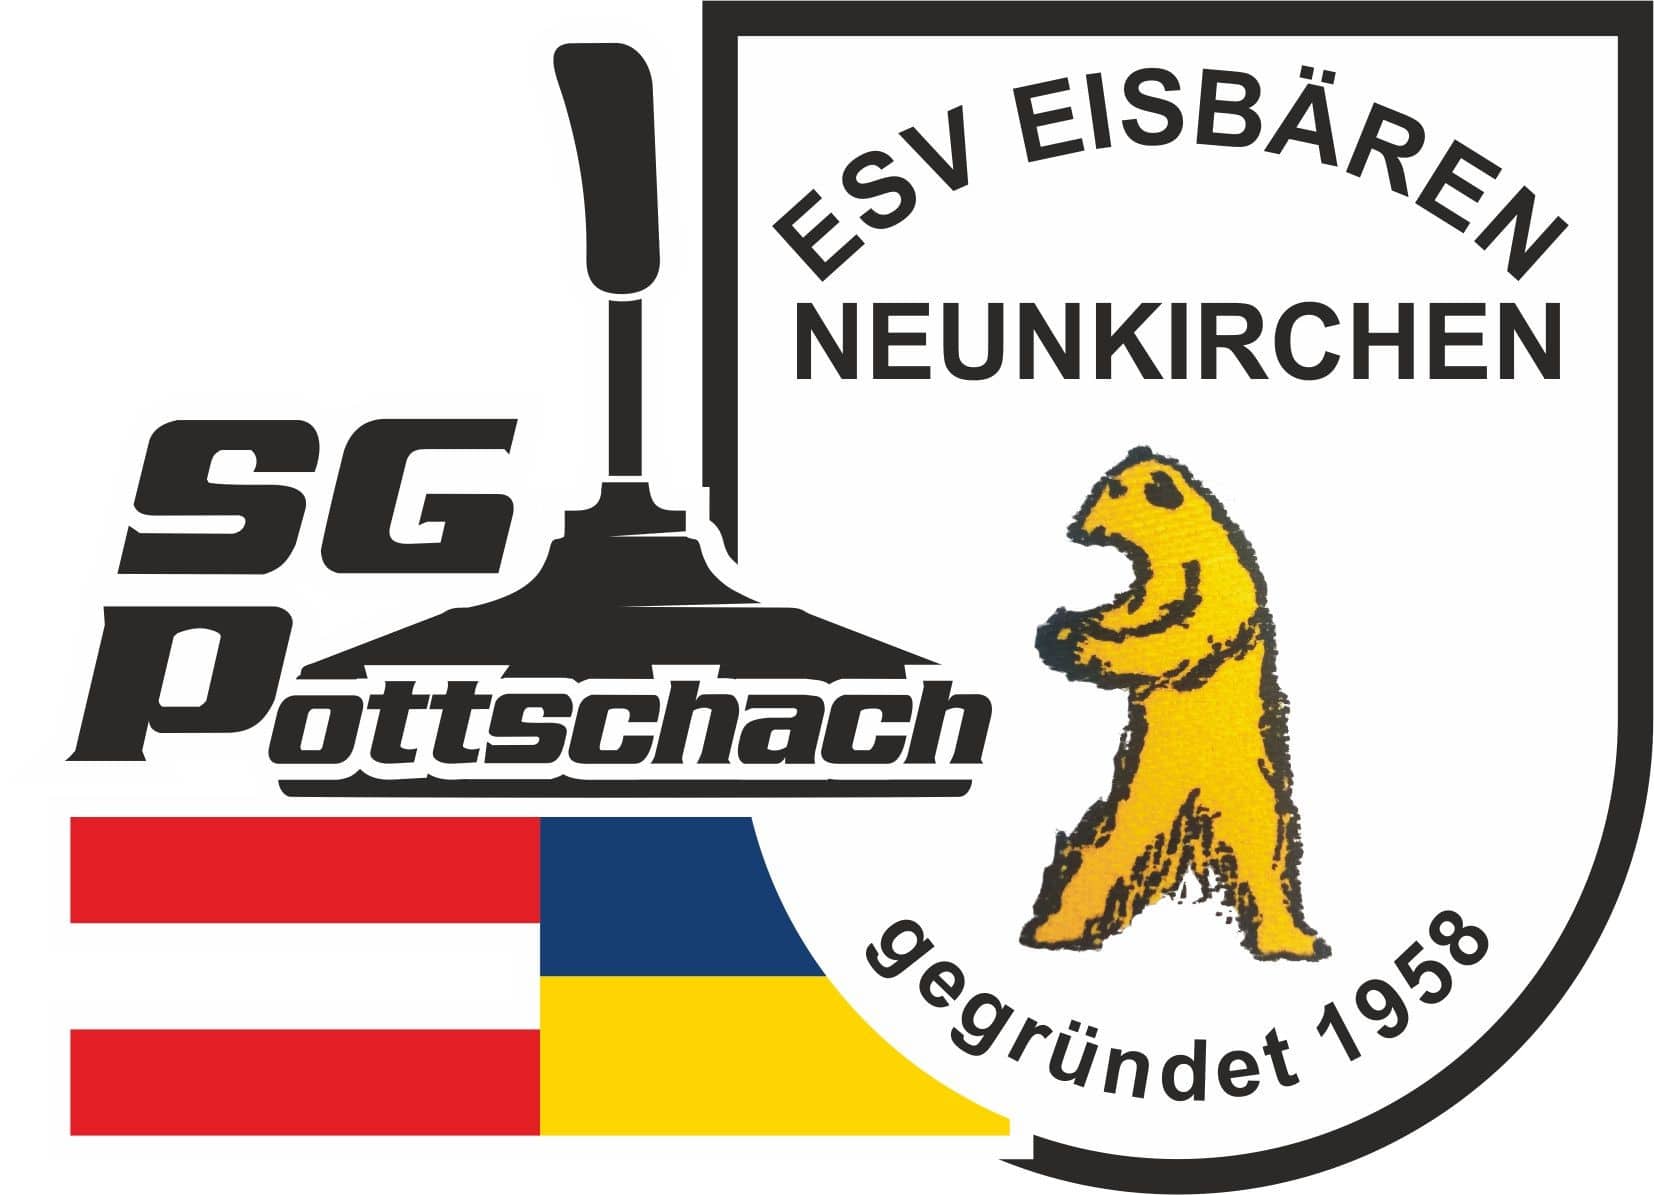 SG Pottschach-Eisbären Neunkirchen